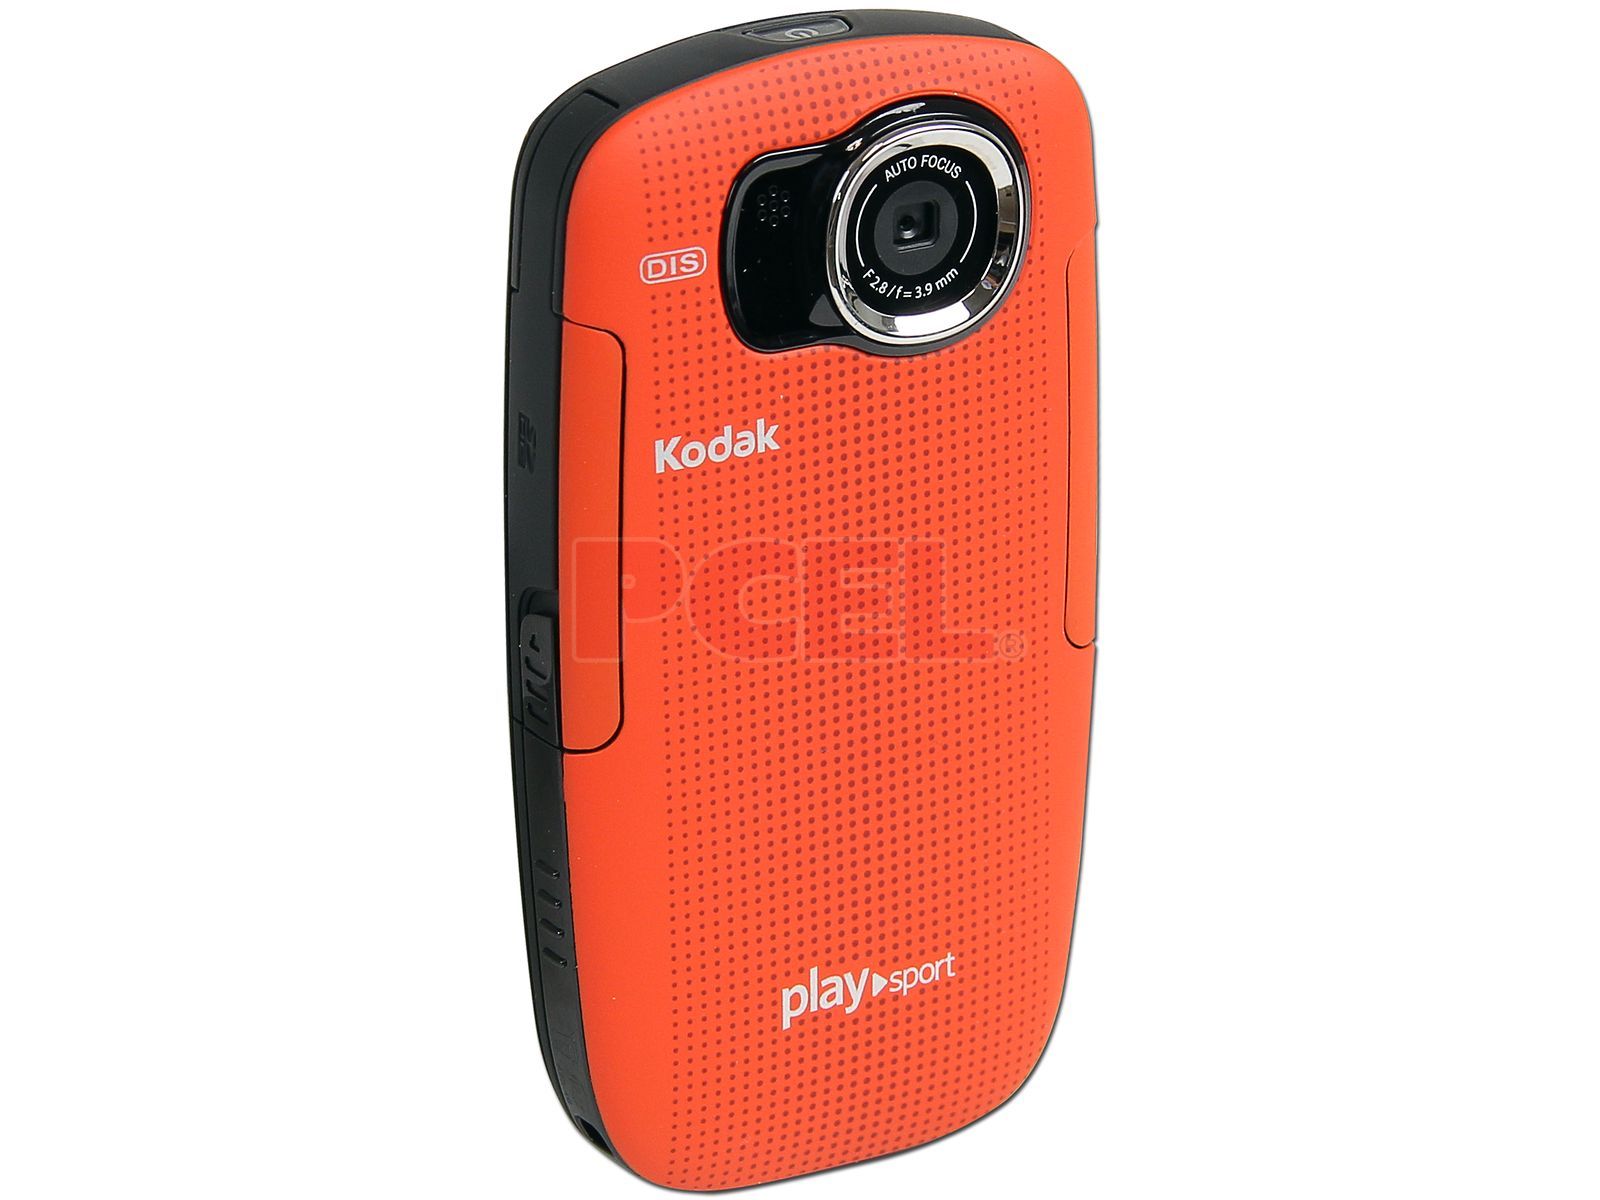 es suficiente exégesis ambiente Cámara de Video Kodak HD PlaySport Zx5, Alta Definición, Fotos de 5 MP y  Video 1080p. Resistente al polvo, impactos y hasta 3m bajo el Agua. Color  Roja.